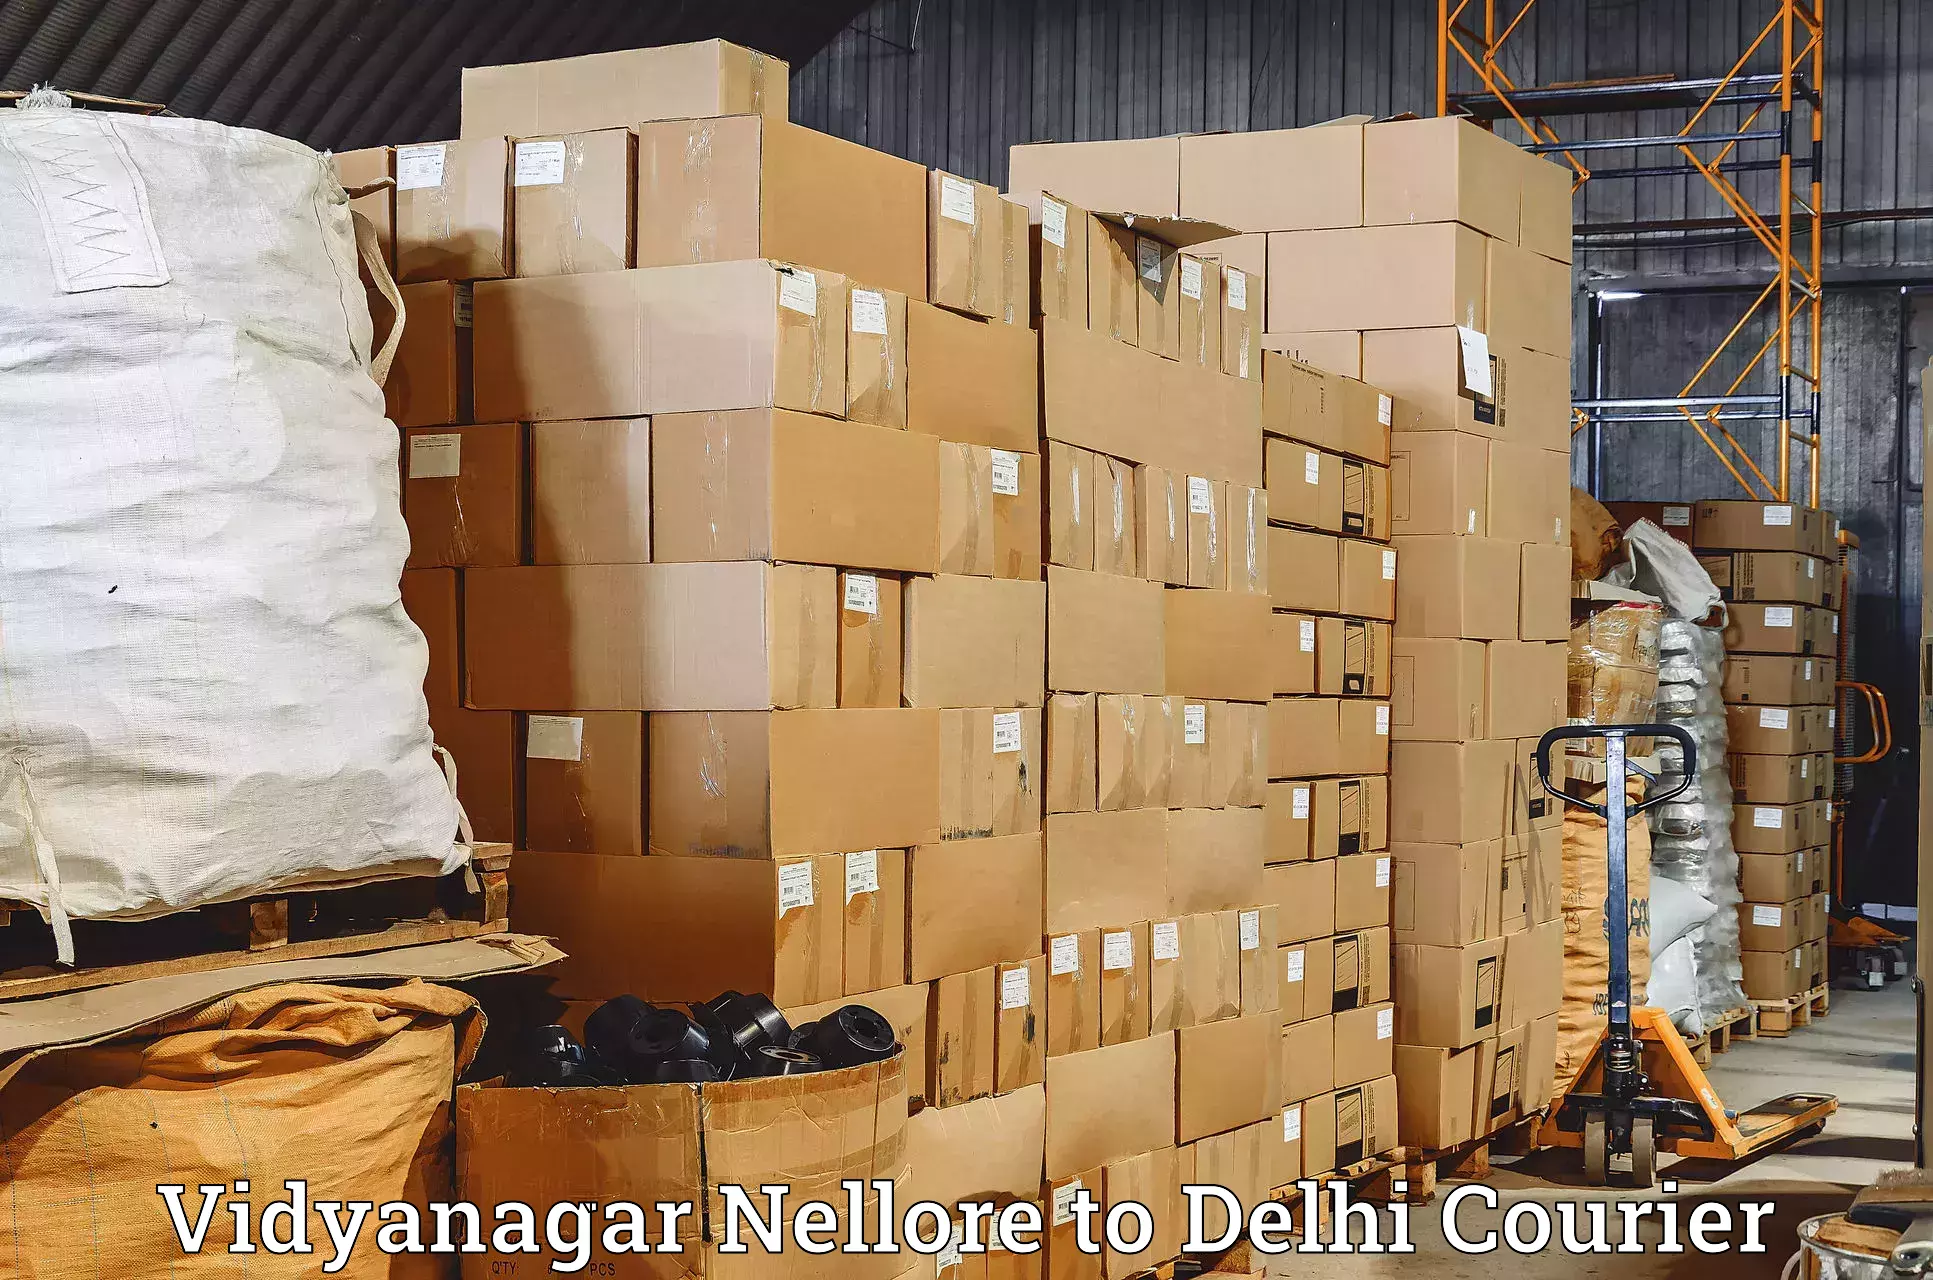 Modern parcel services Vidyanagar Nellore to Jamia Millia Islamia New Delhi